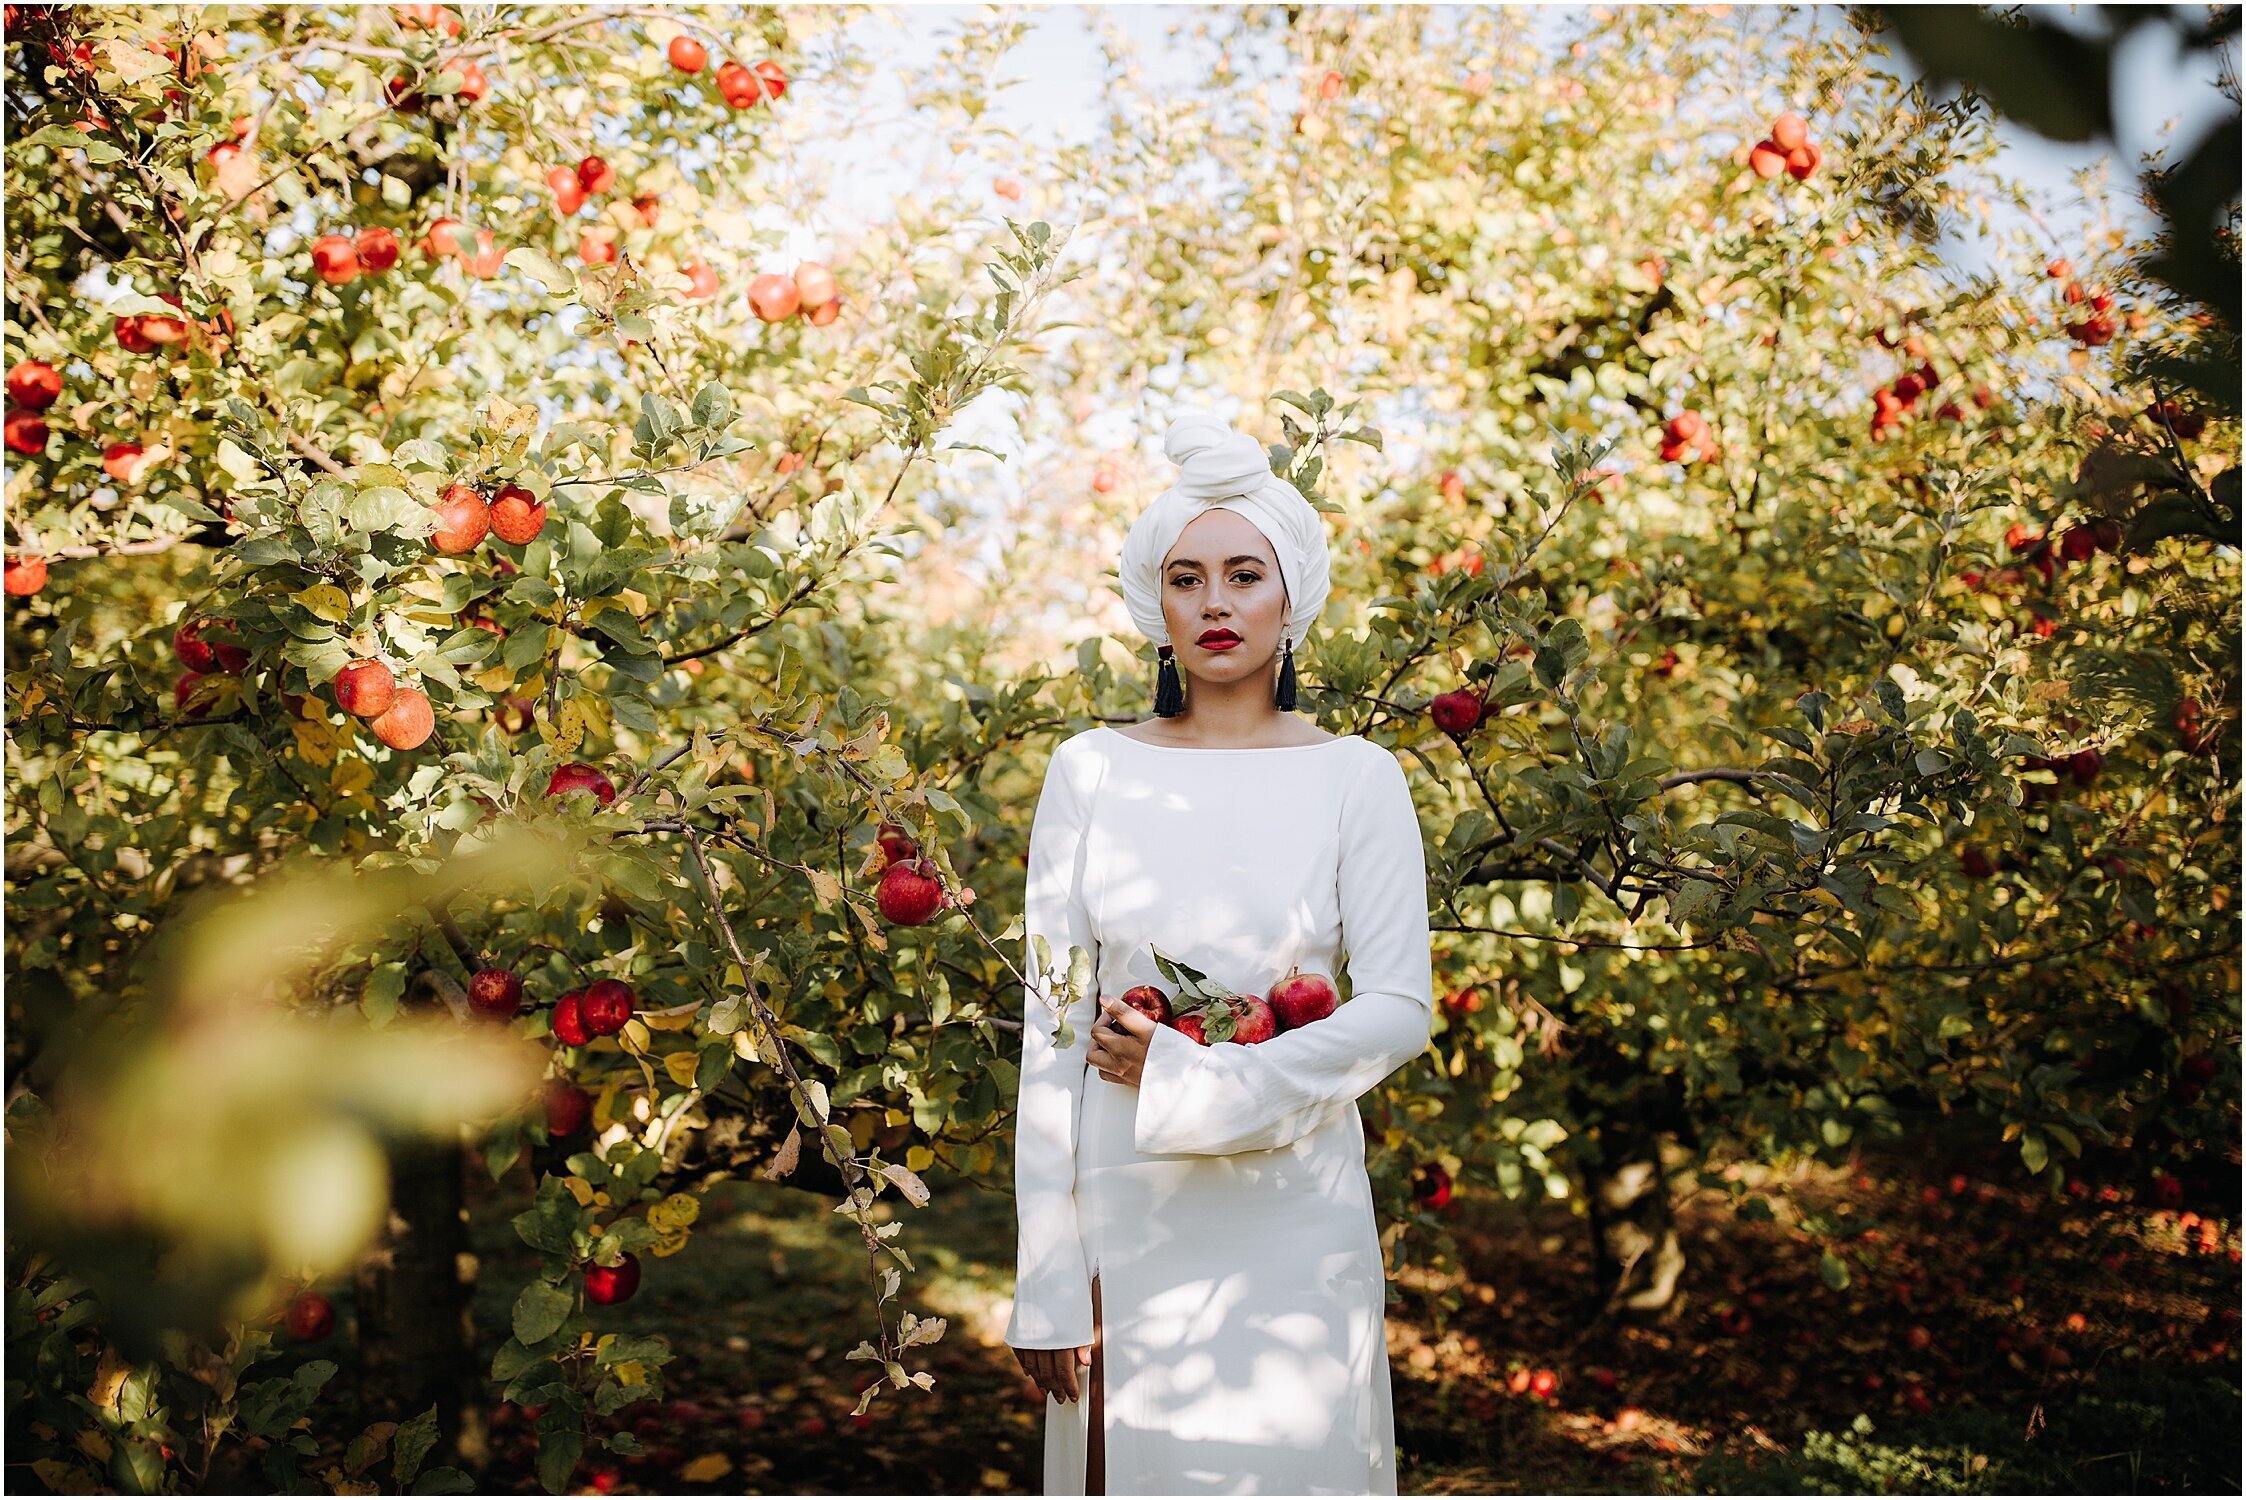 Zanda+Auckland+wedding+photographer+unique+portrait+photoshoot+ideas+autumn+winter+Windmill+apple+orchard+Coatesville+New+Zealand_1.jpeg